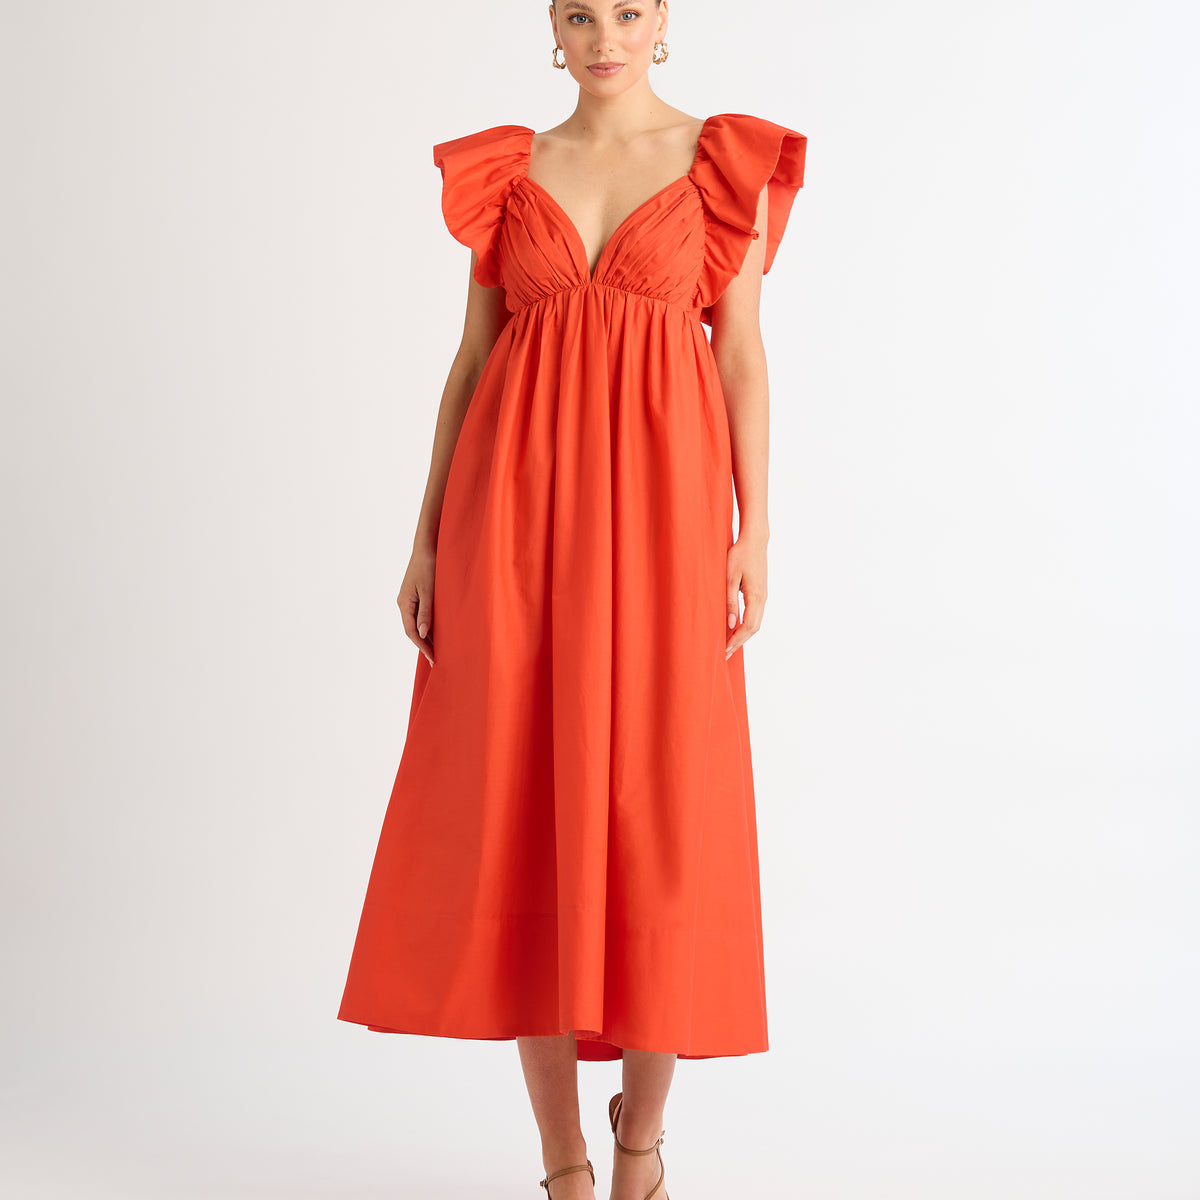 Bermuda Maxi Dress Red| Cotton Maxi Dress | SHEIKE